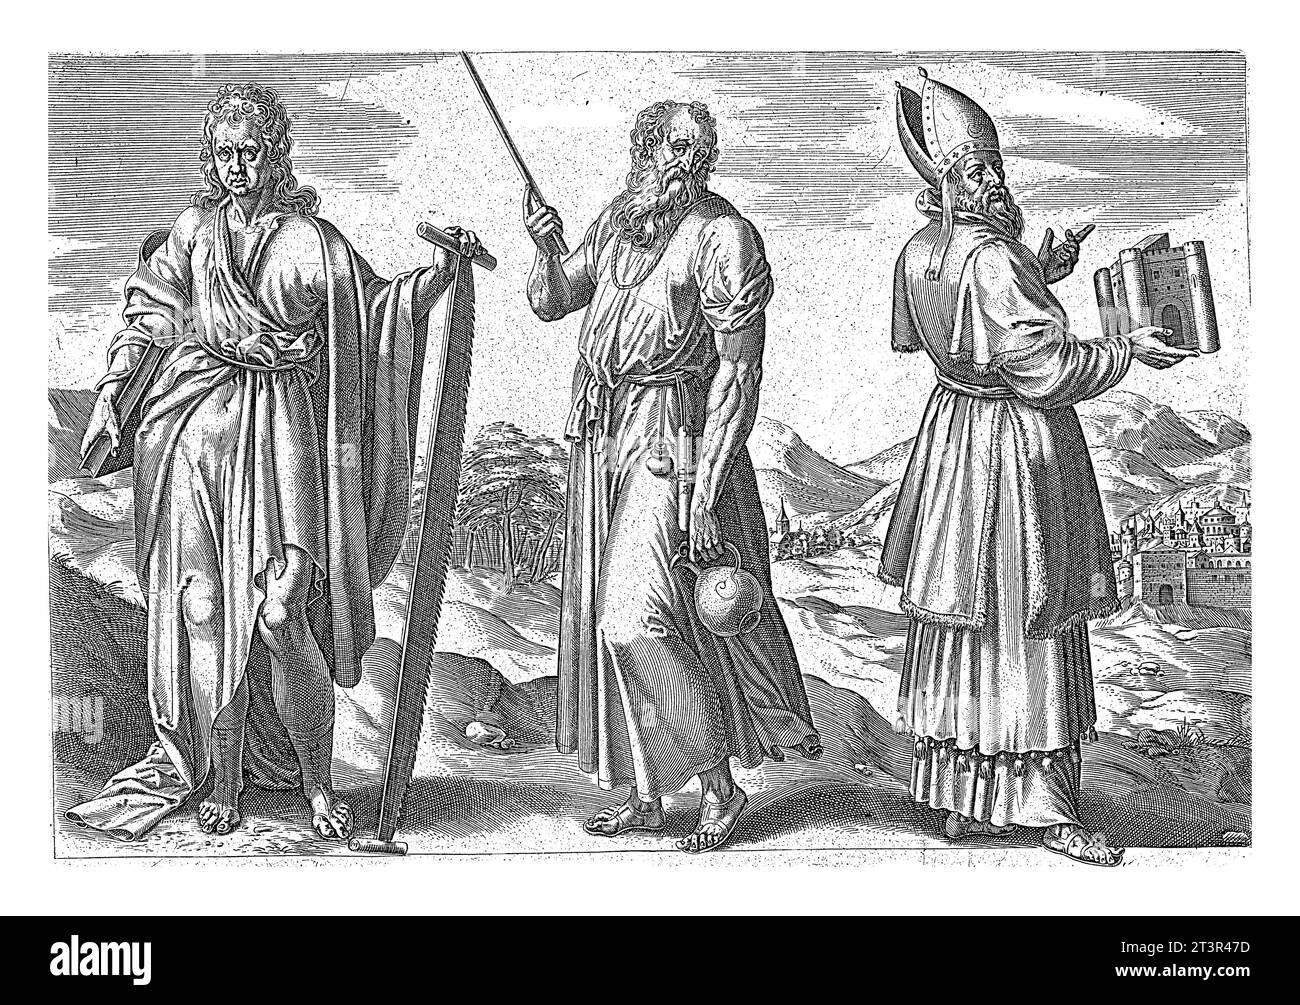 Isaïe, Jérémie et Ézéchiel, Jan Snellinck (I), 1585 - 1643 les prophètes Isaïe, Jérémie et Ézéchiel se tiennent côte à côte dans un paysage. Banque D'Images